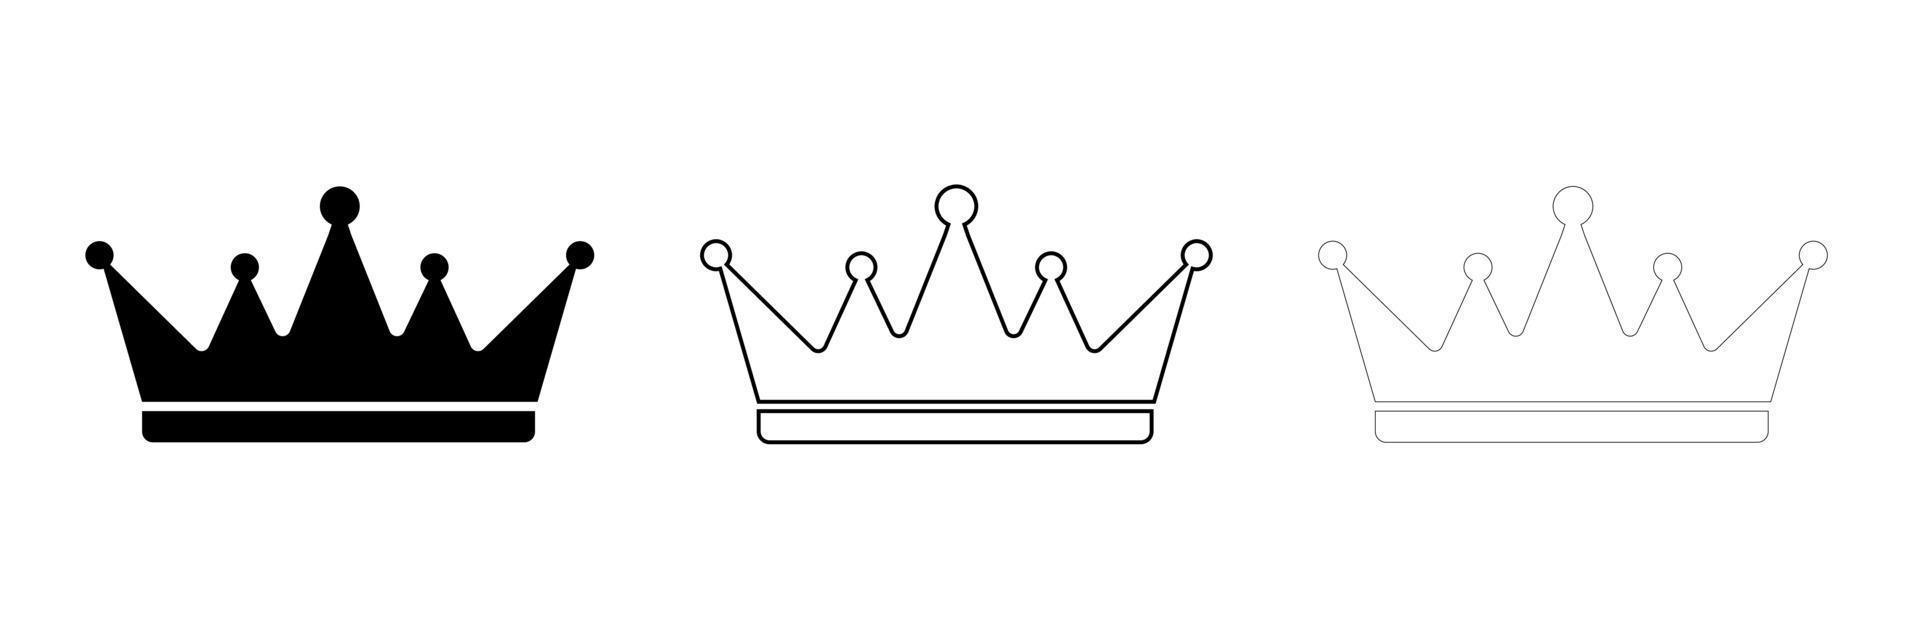 moderne kroon silhouet pictogram ontwerpsjabloon. moderne kroonset in verschillende diktes. award icoon op de achtergrond voor grafisch en webdesign. internetconceptsymbool voor websiteknop of mobiele app. vector